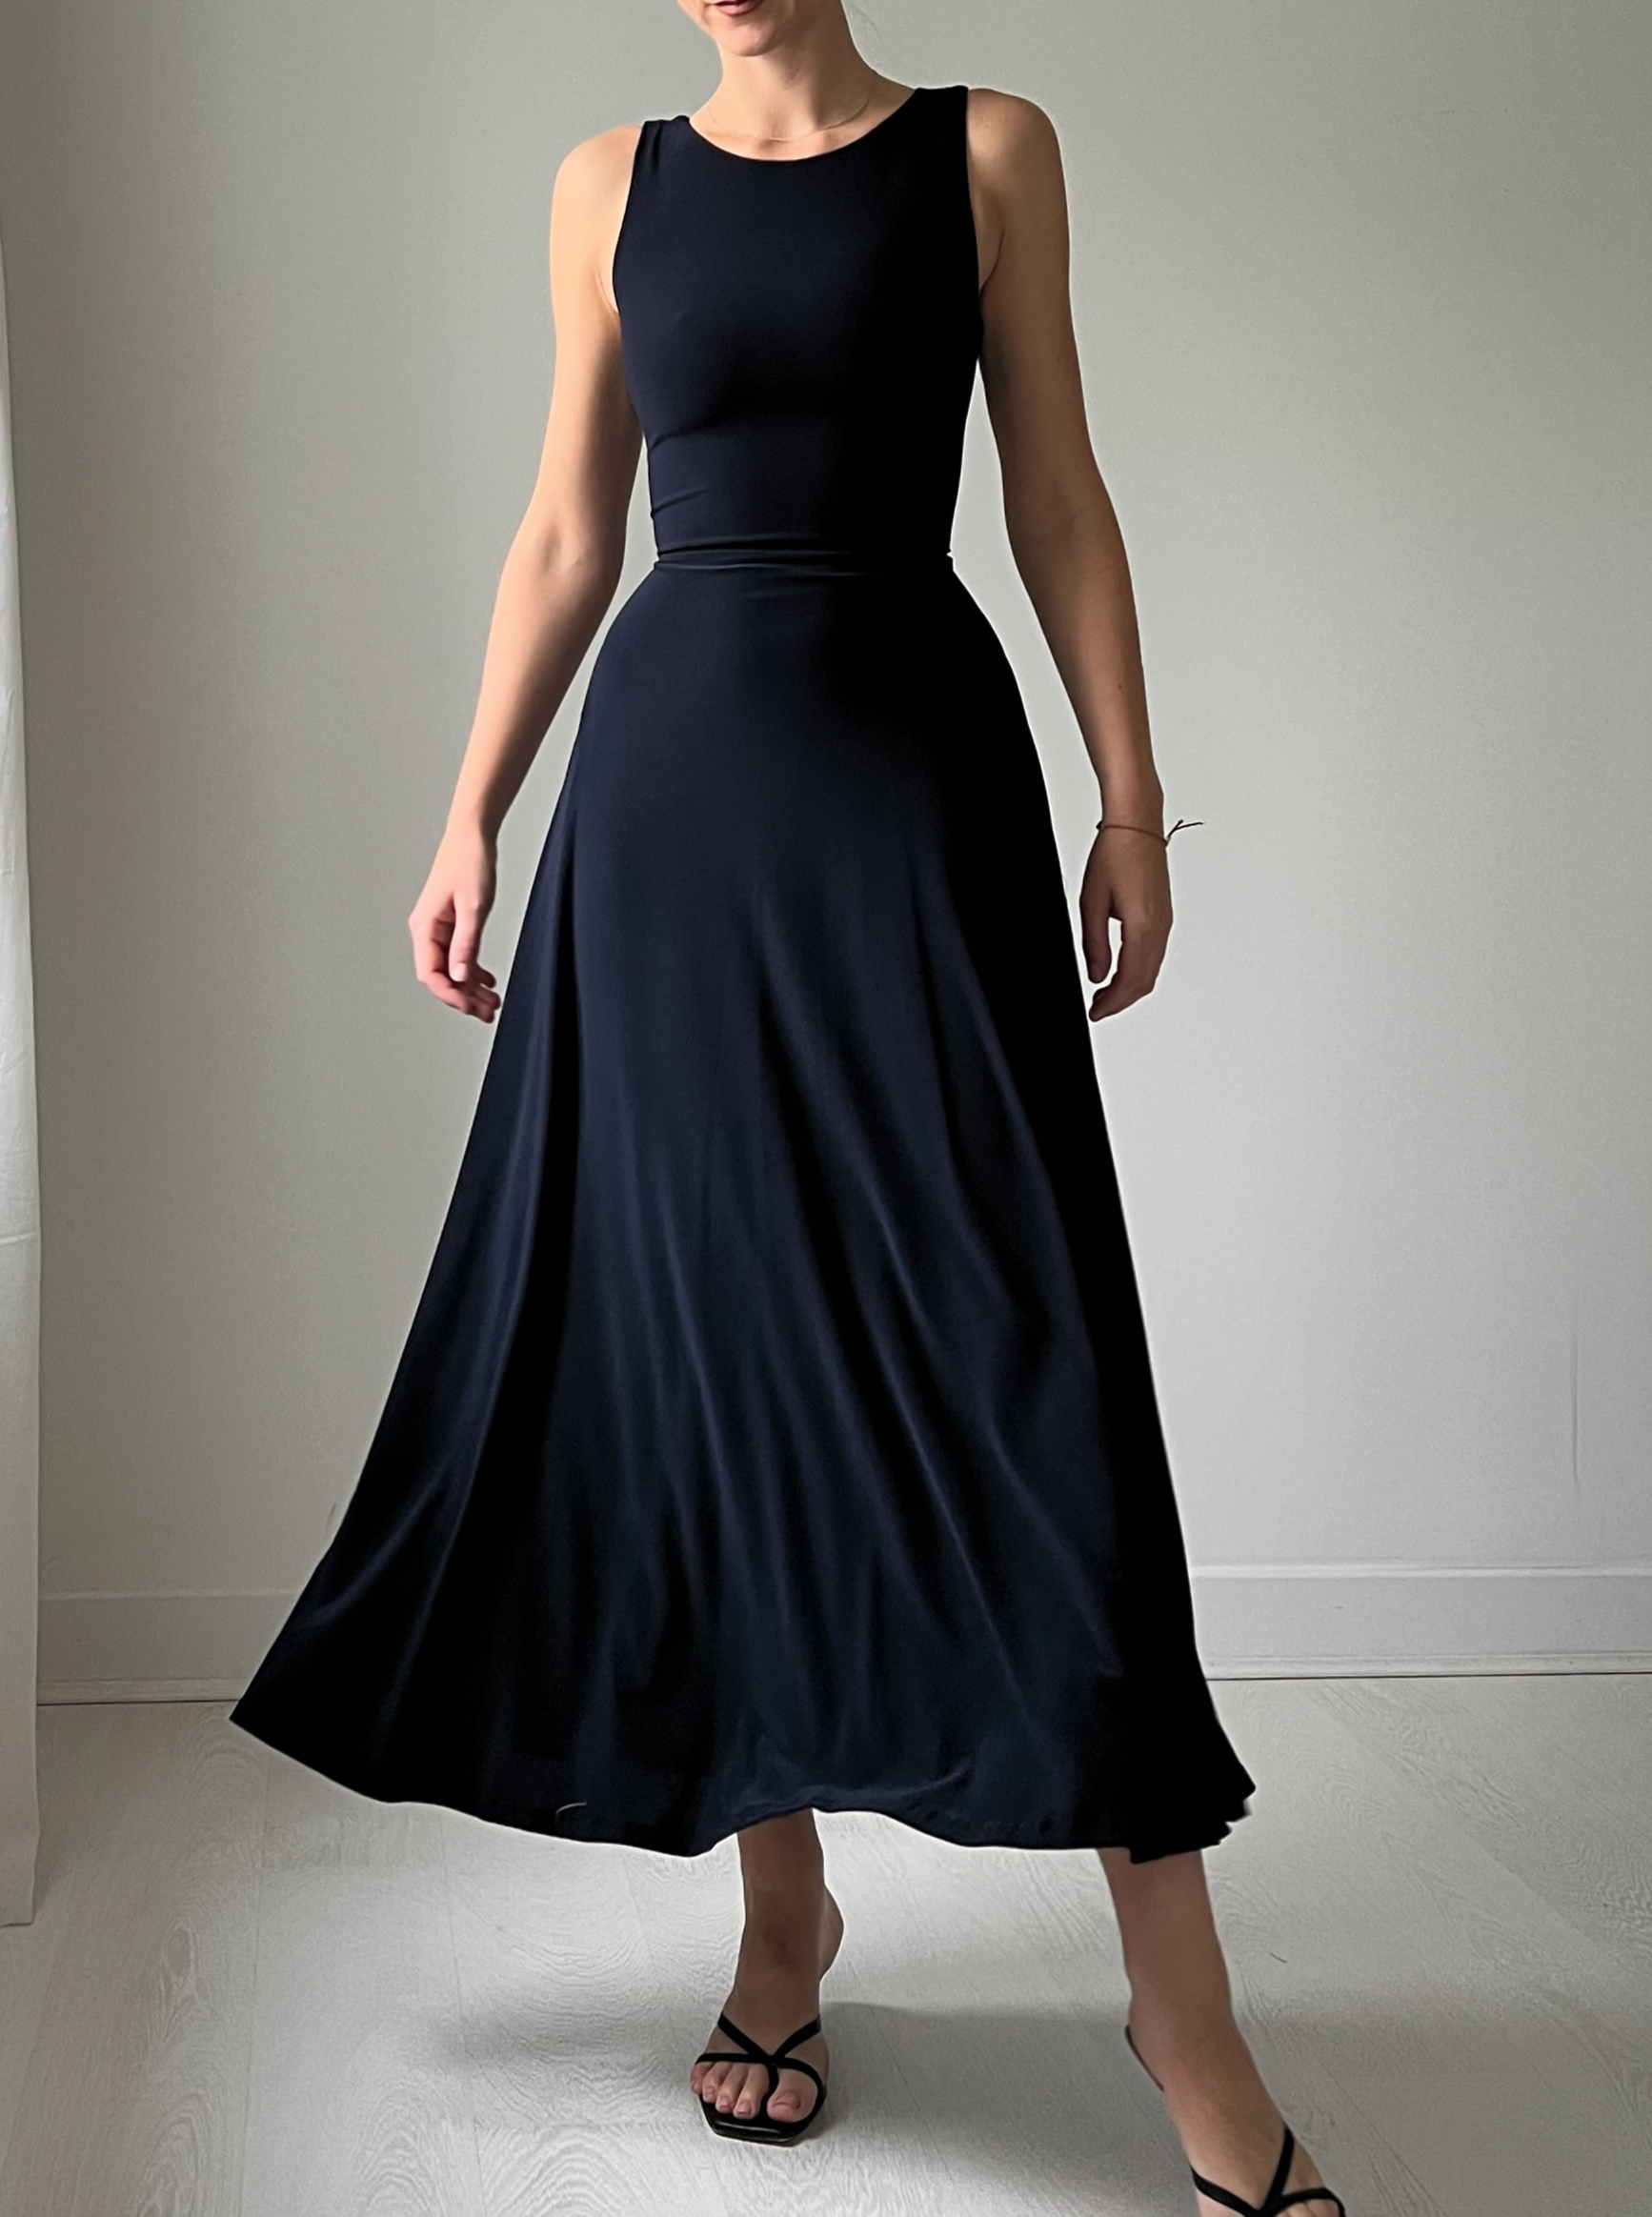 Juni Reversible Maxi Dress – AYM